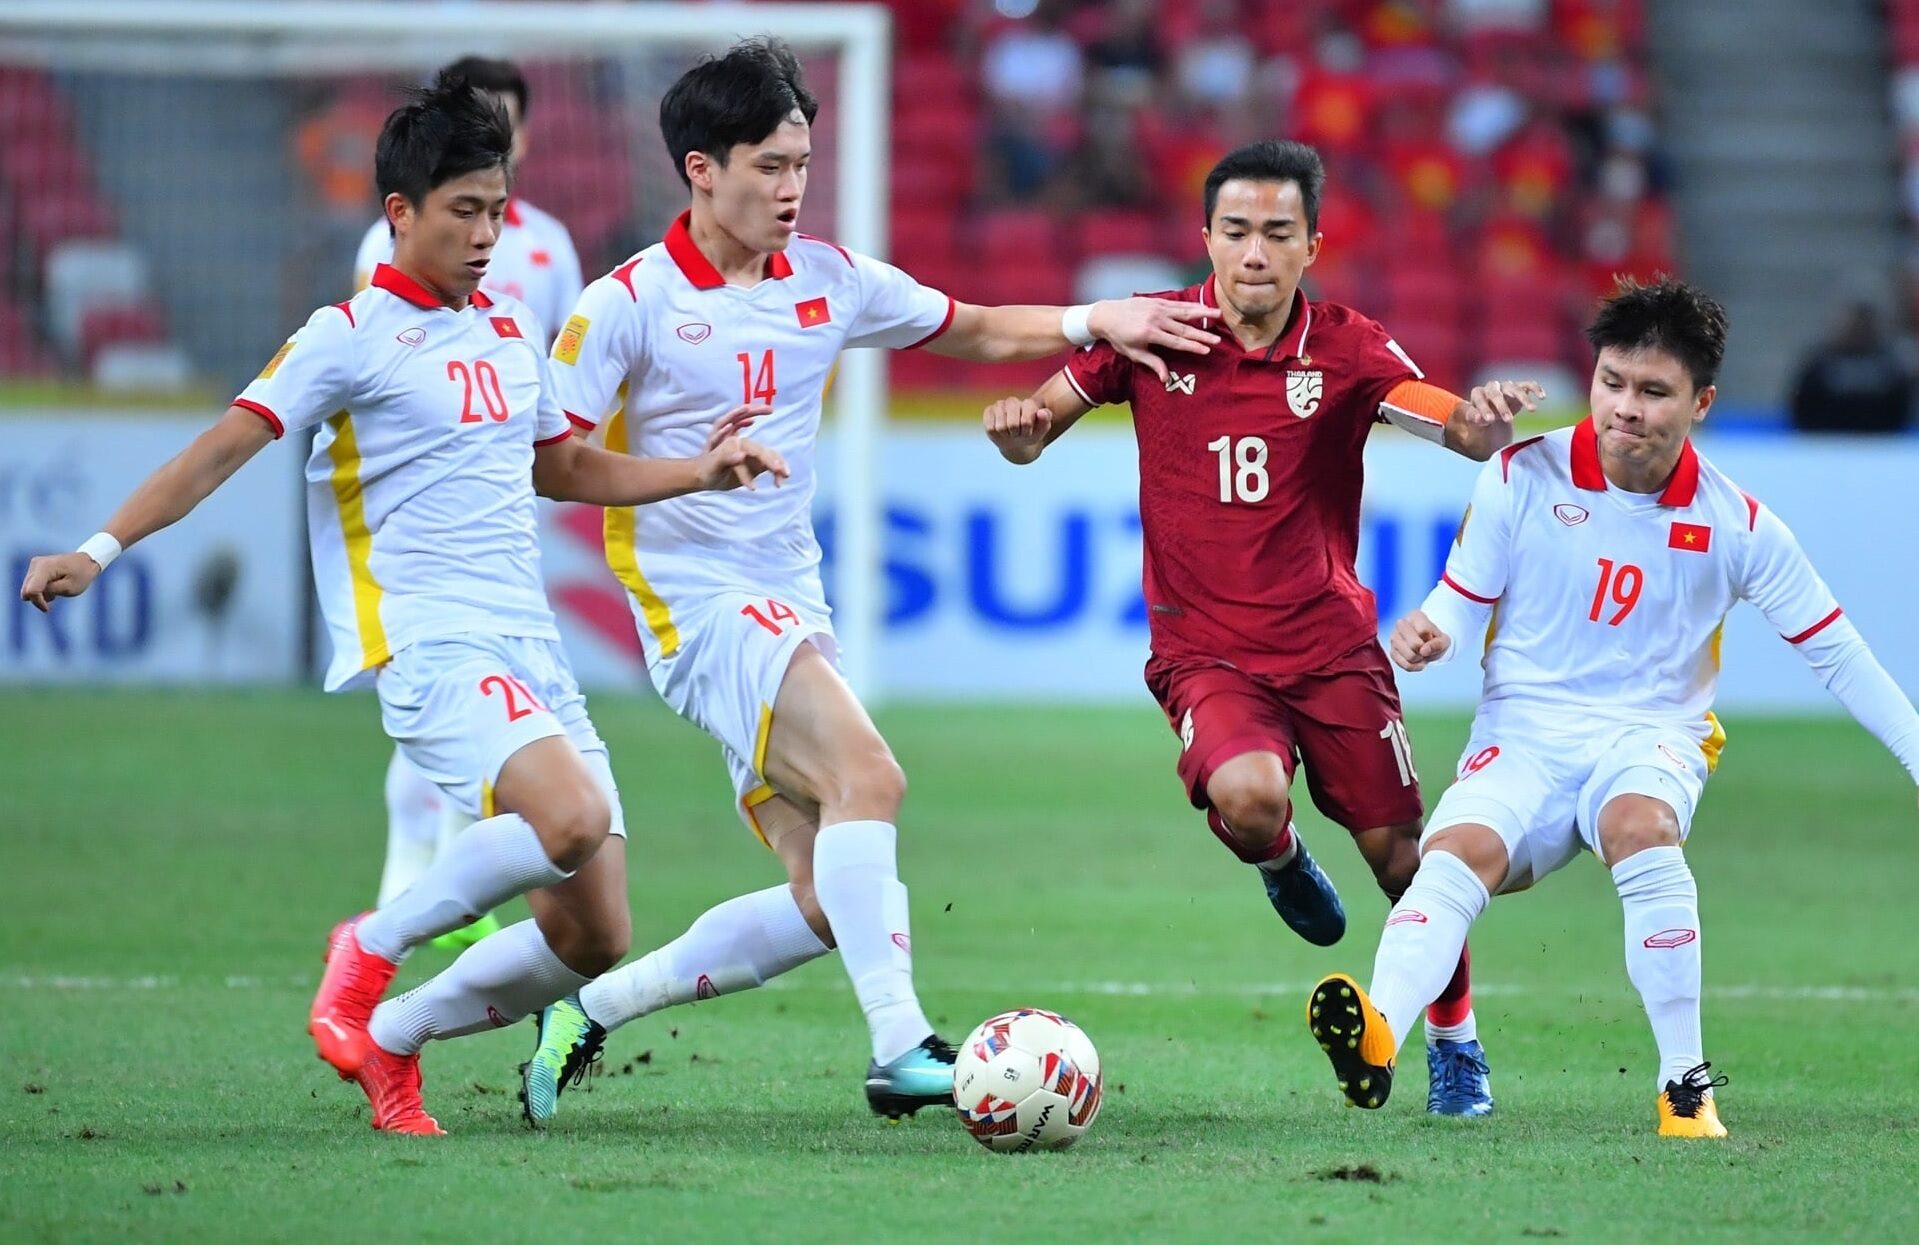 Báo Thái Lan: Voi Chiến ‘khom mình’ vượt qua Việt Nam, vào chung kết AFF Cup 2021 - Ảnh 2